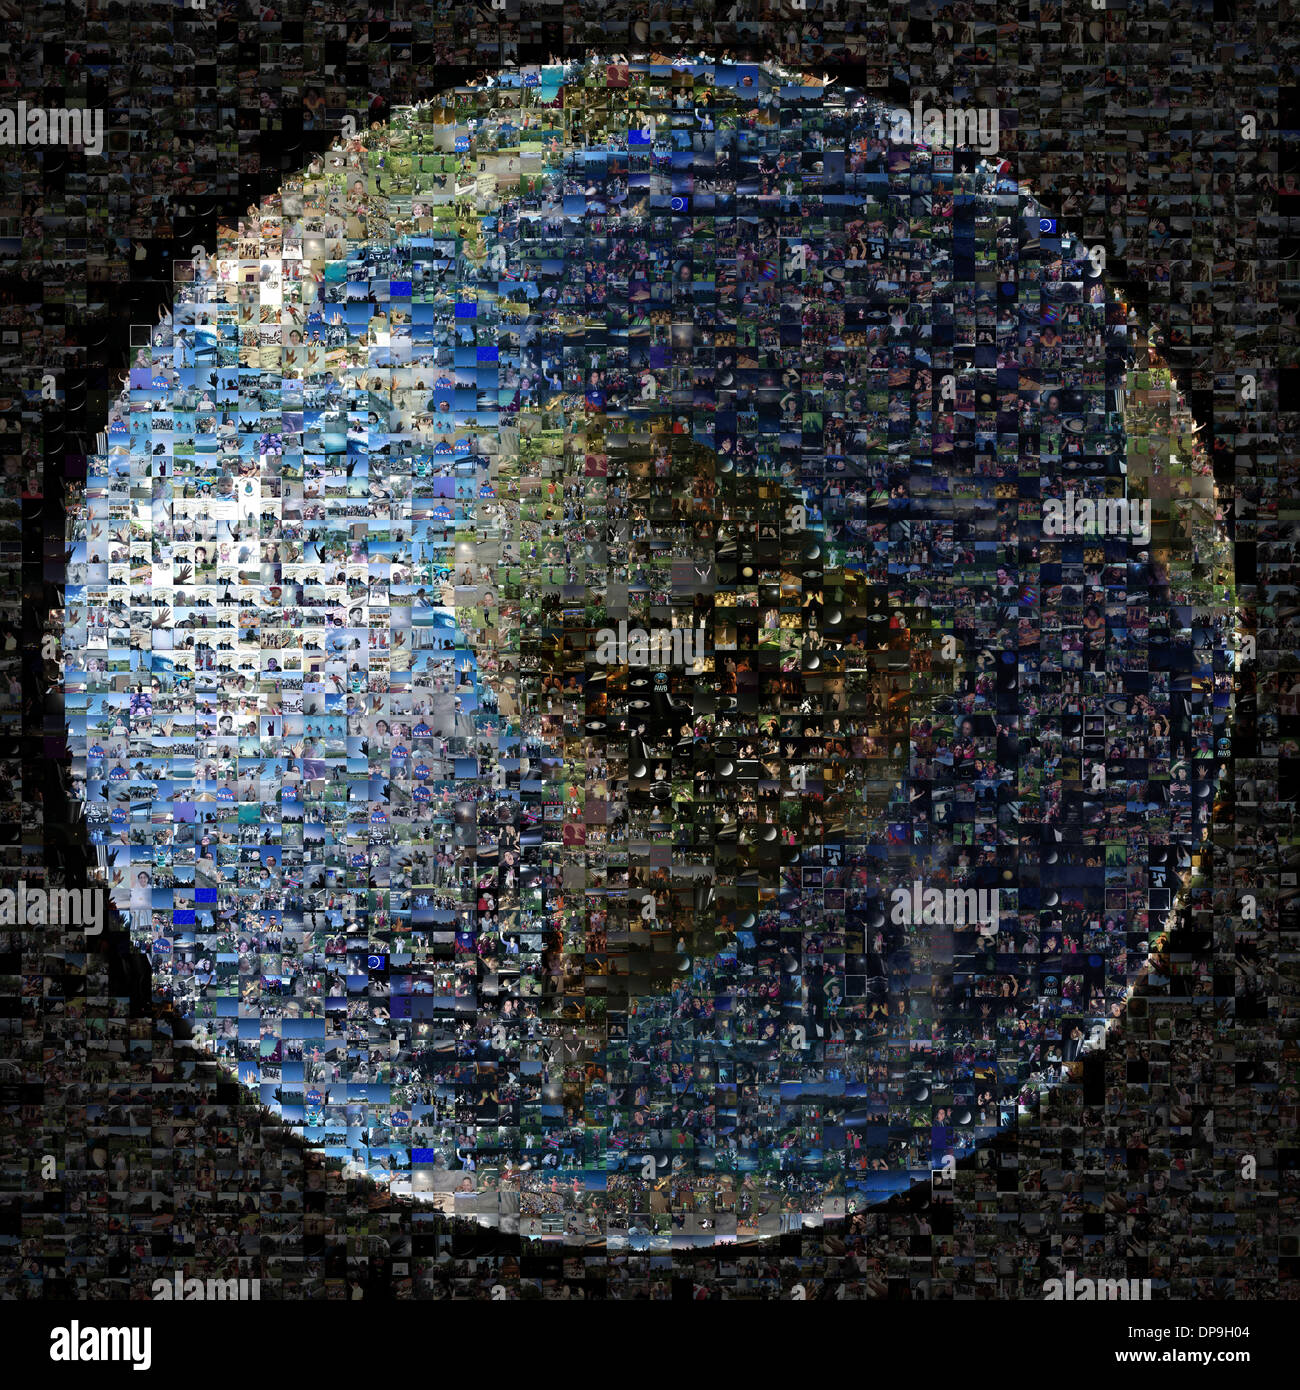 Composito di 1400 immagini come parte dell'onda a Saturno evento organizzato dalla NASA la missione Cassini Foto Stock